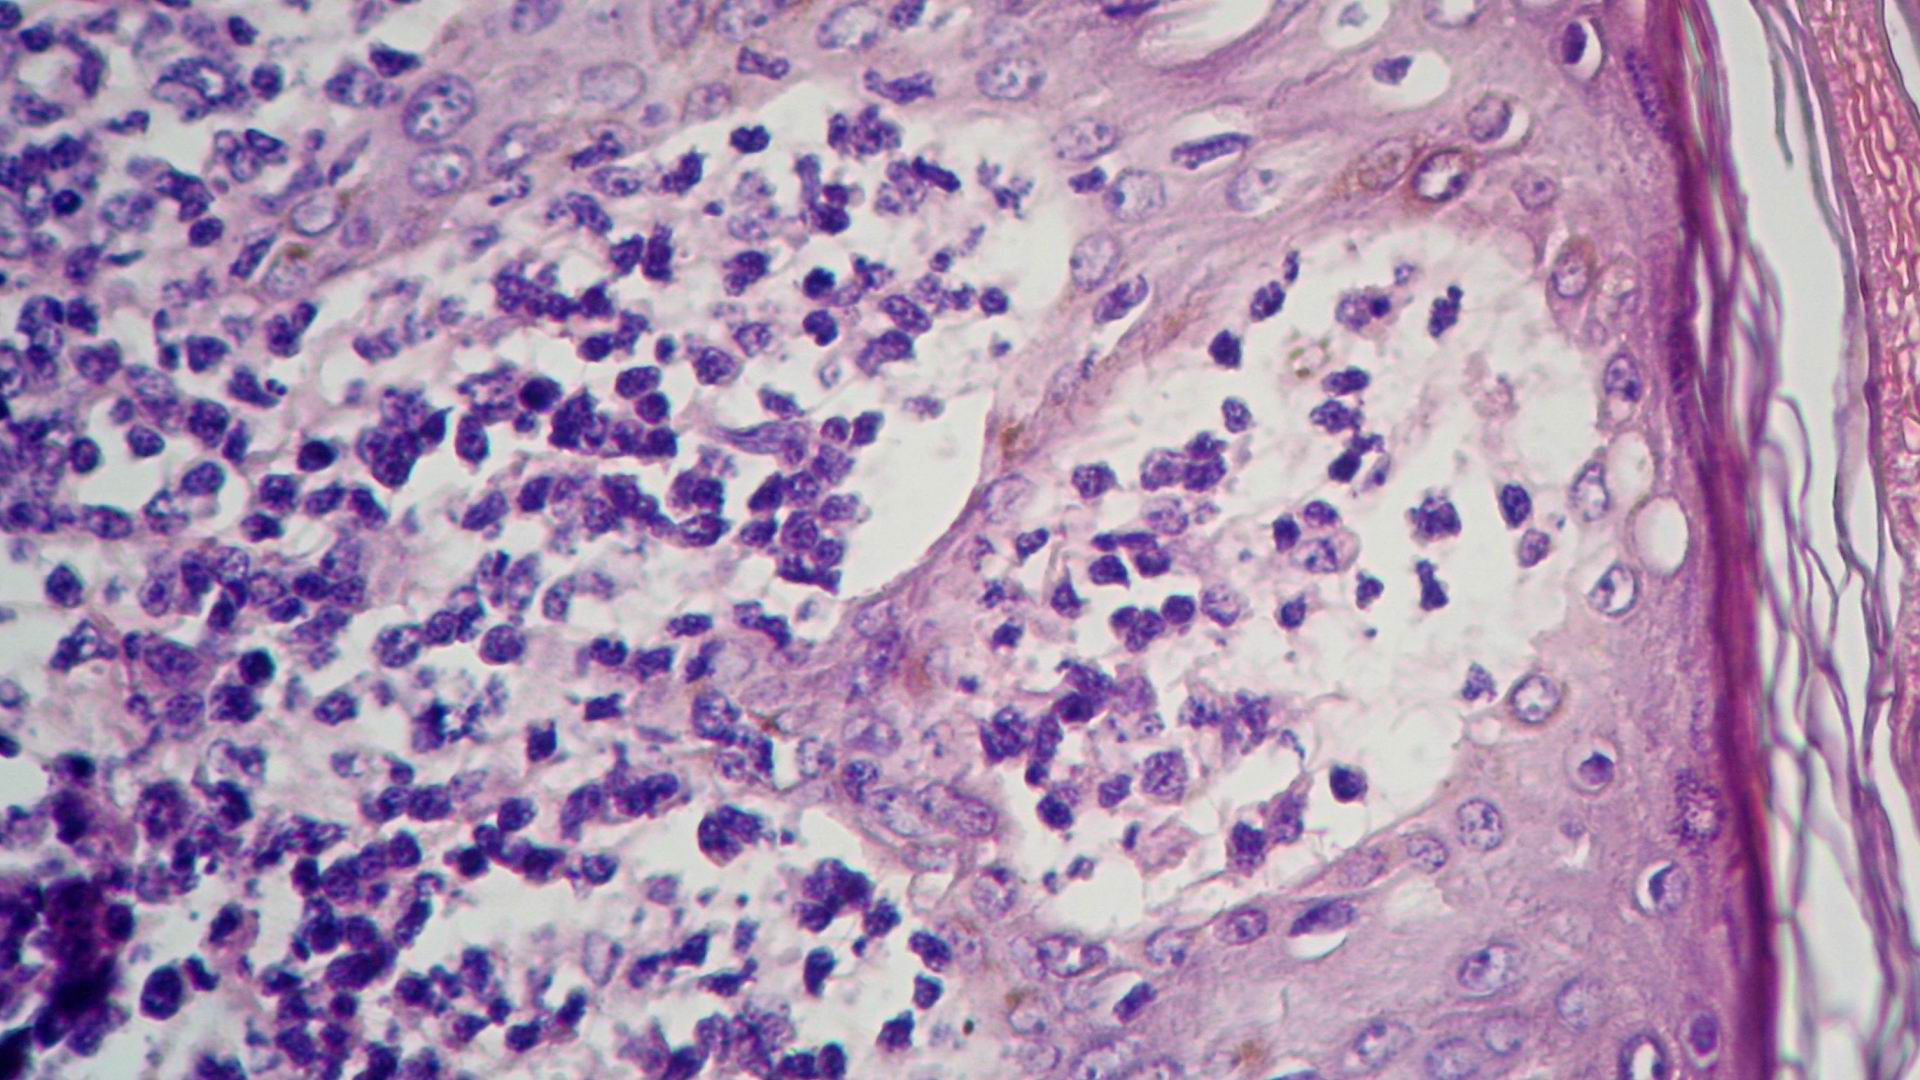 Imagen de Tumores Cutneos Mltilples en Paciente Masculino con antecedente de Tumor Testicular.